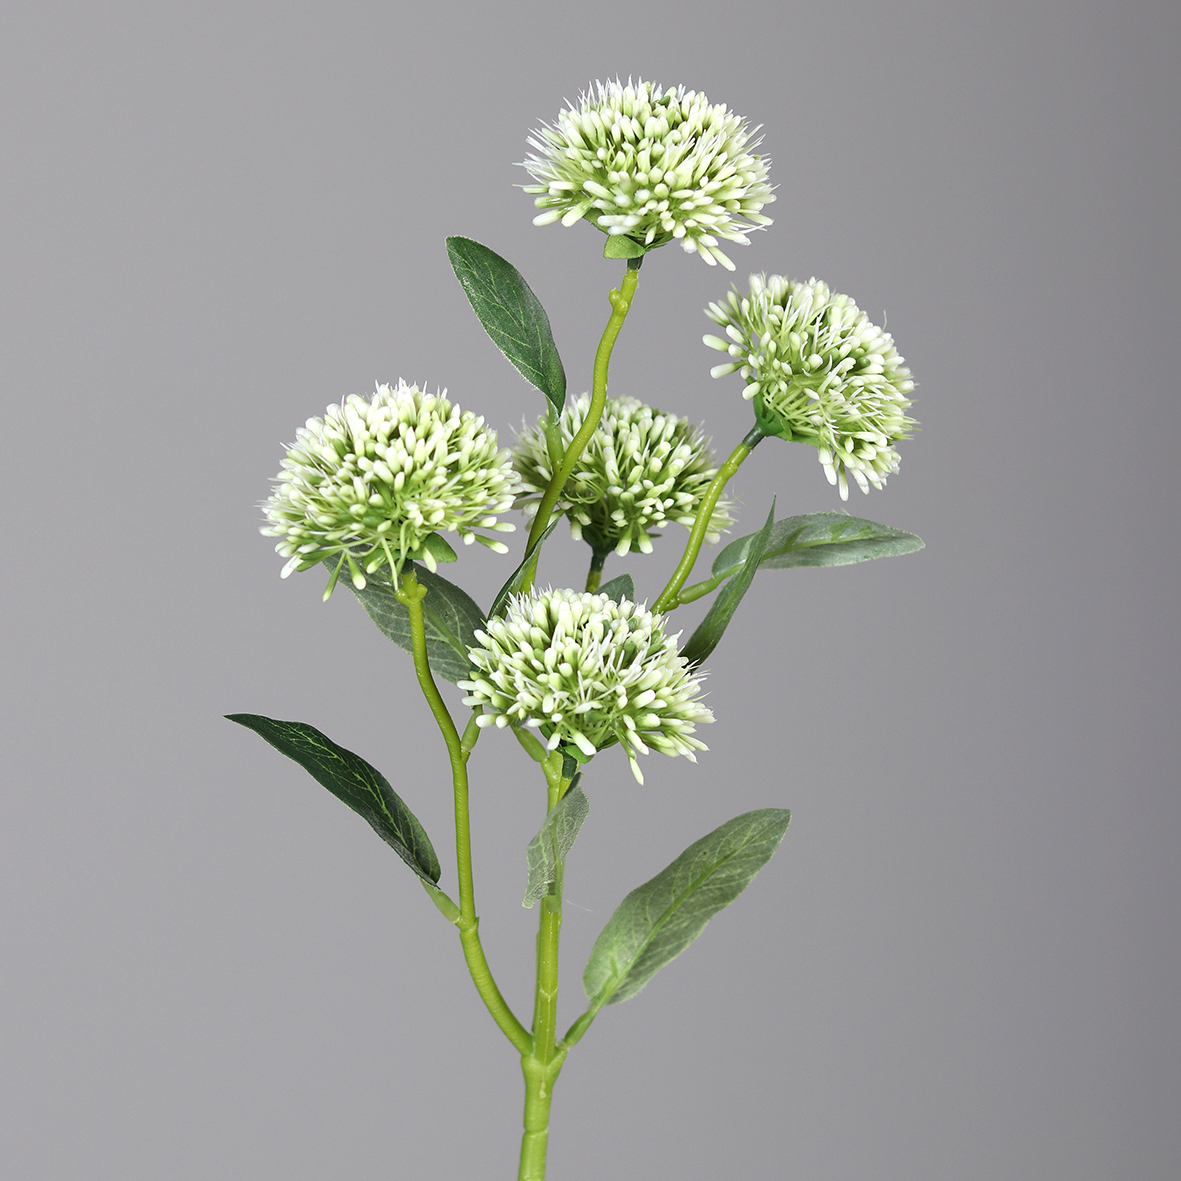 Alliumzweig mit 5 Blüten 56cm weiß DP Kunstblumen künstliche Blumen Allium Lauch